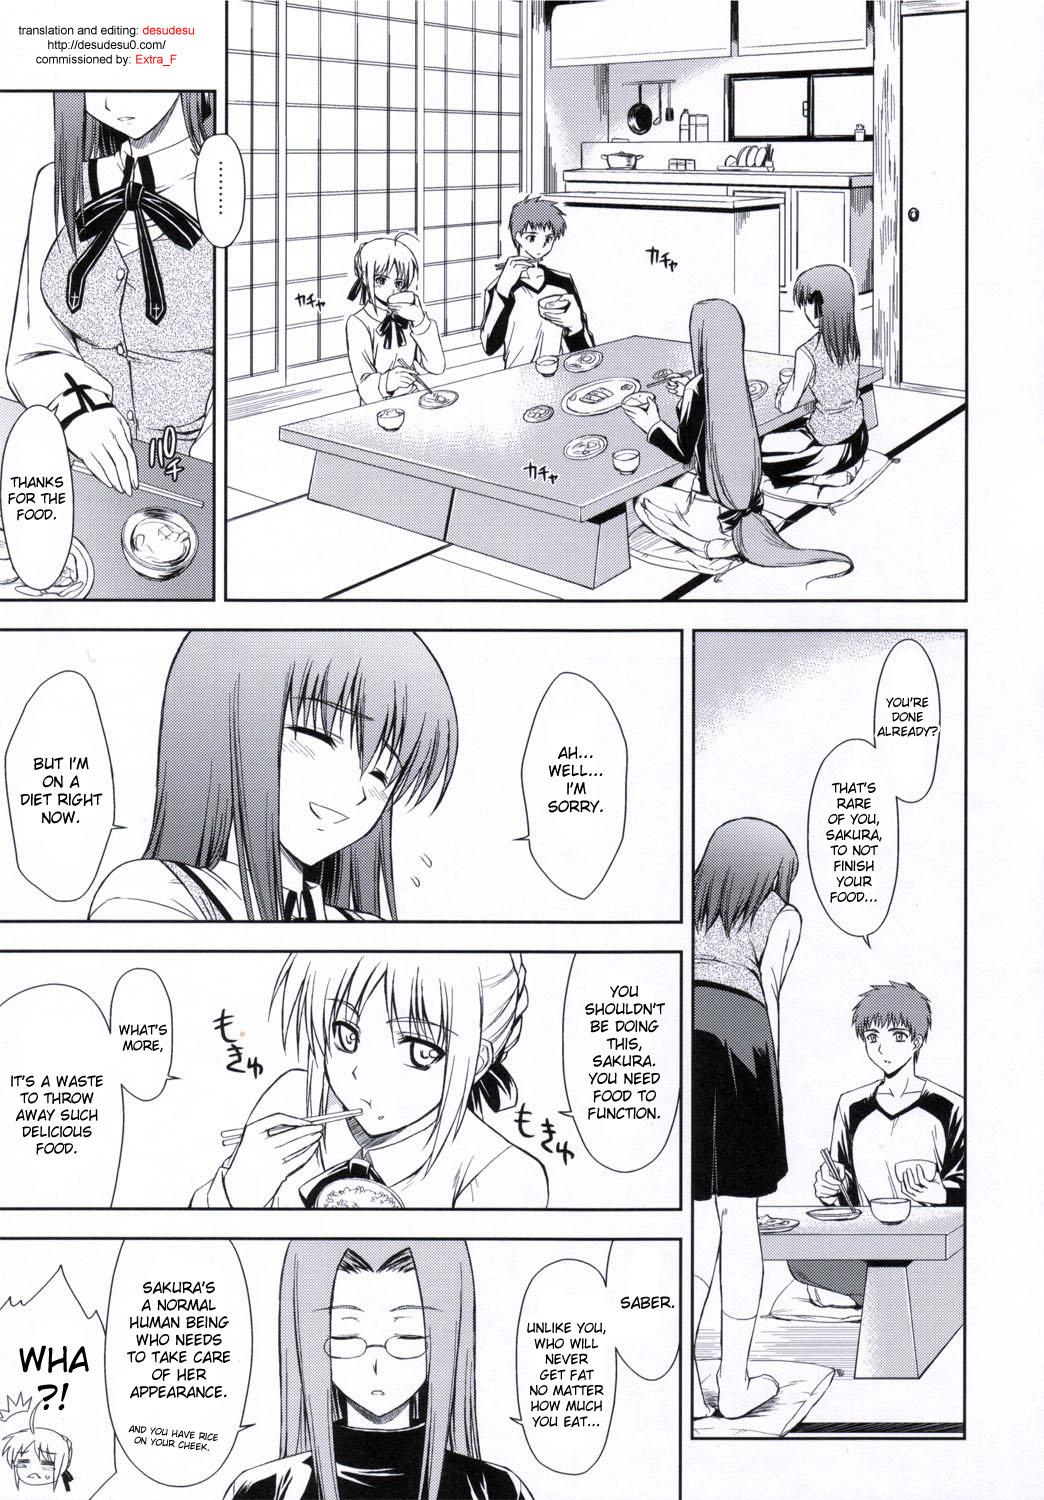 Lesbians Utakata Sakurairo - Fate stay night Masturbates - Page 4